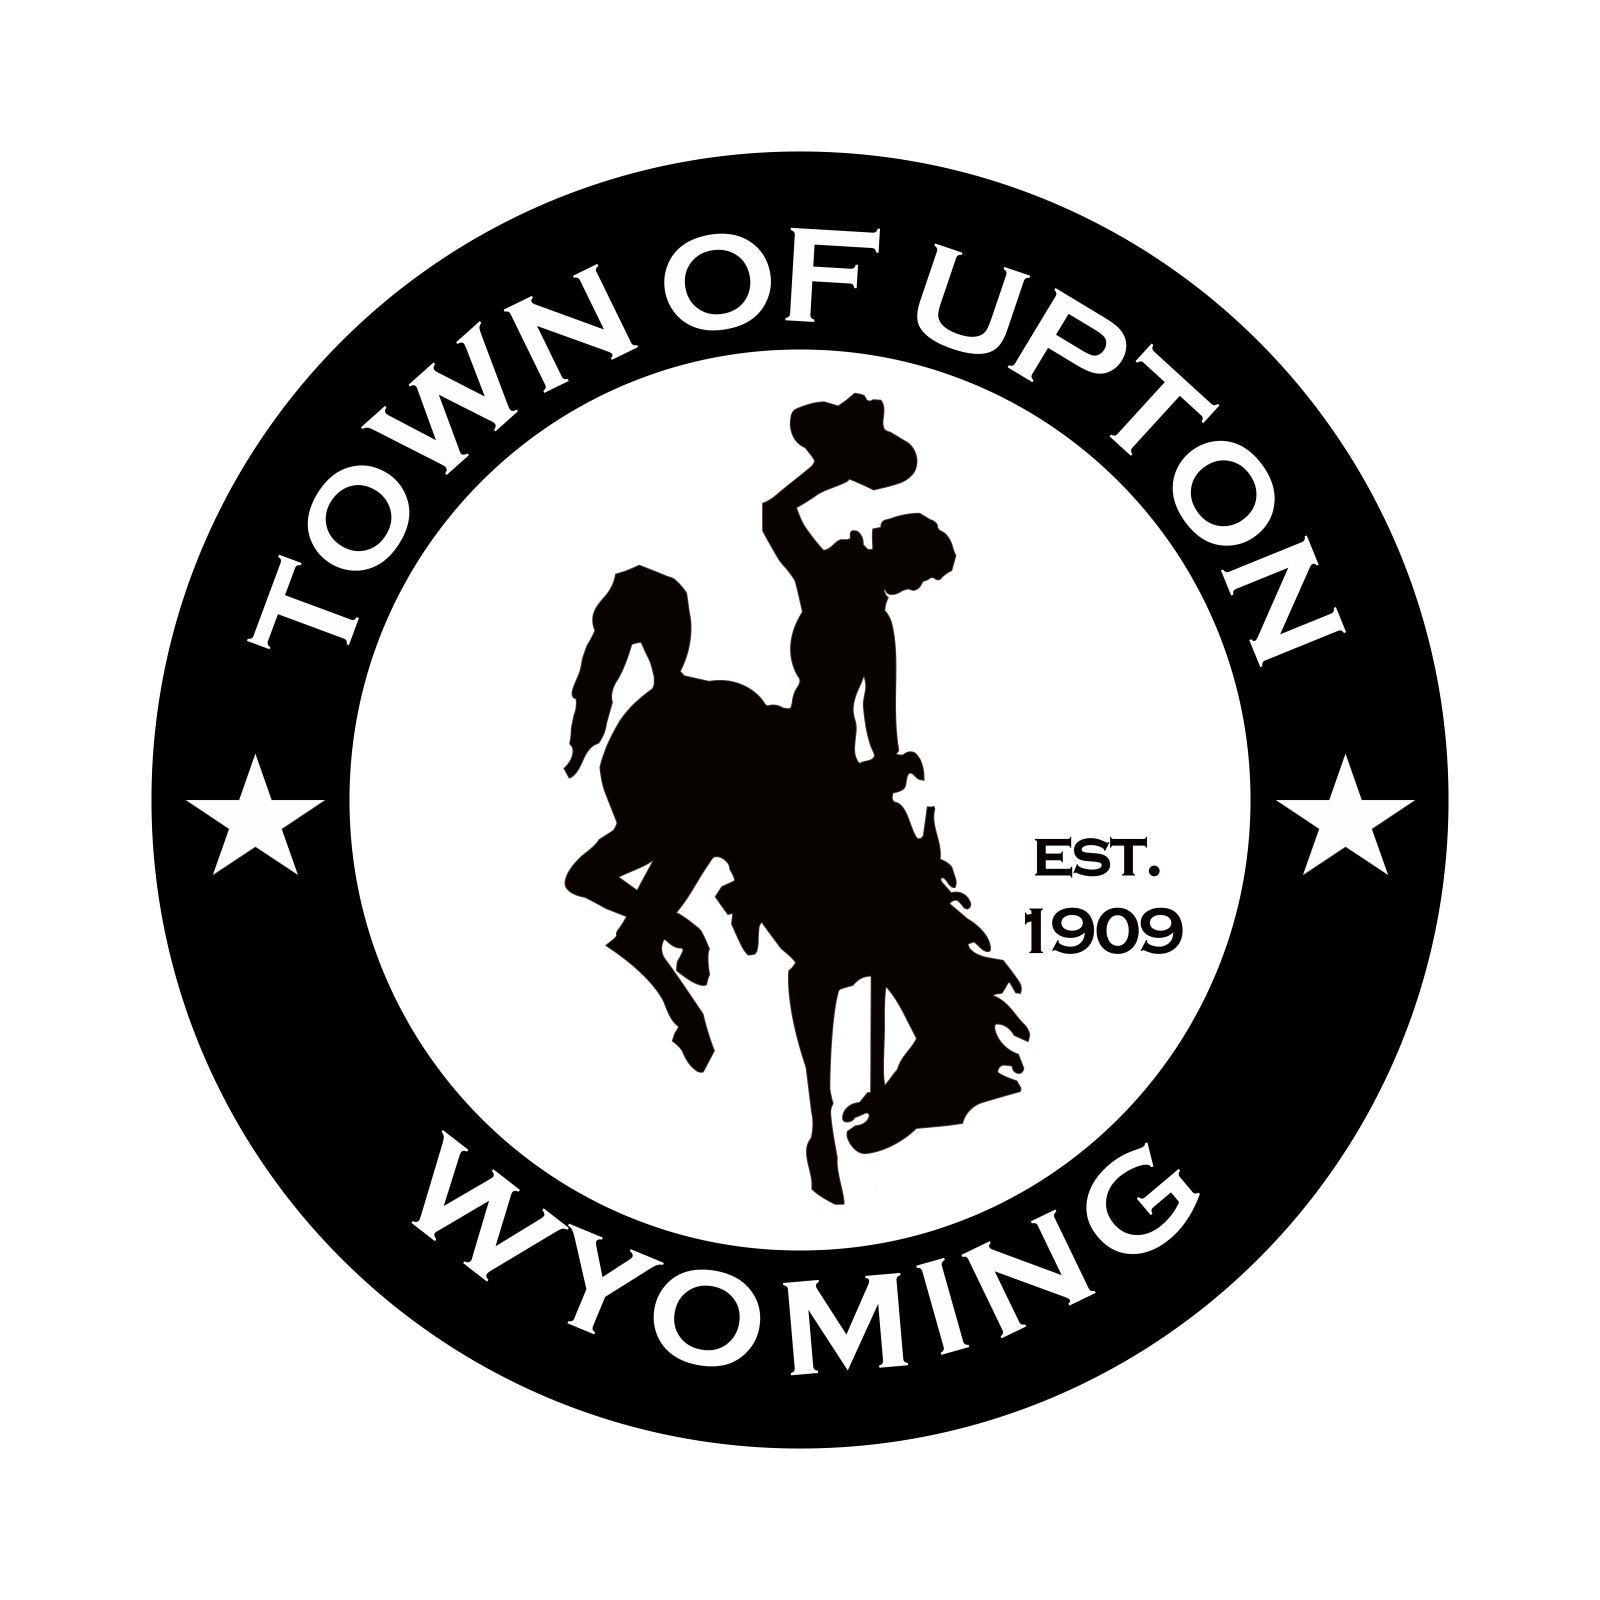 Town of Upton Photo